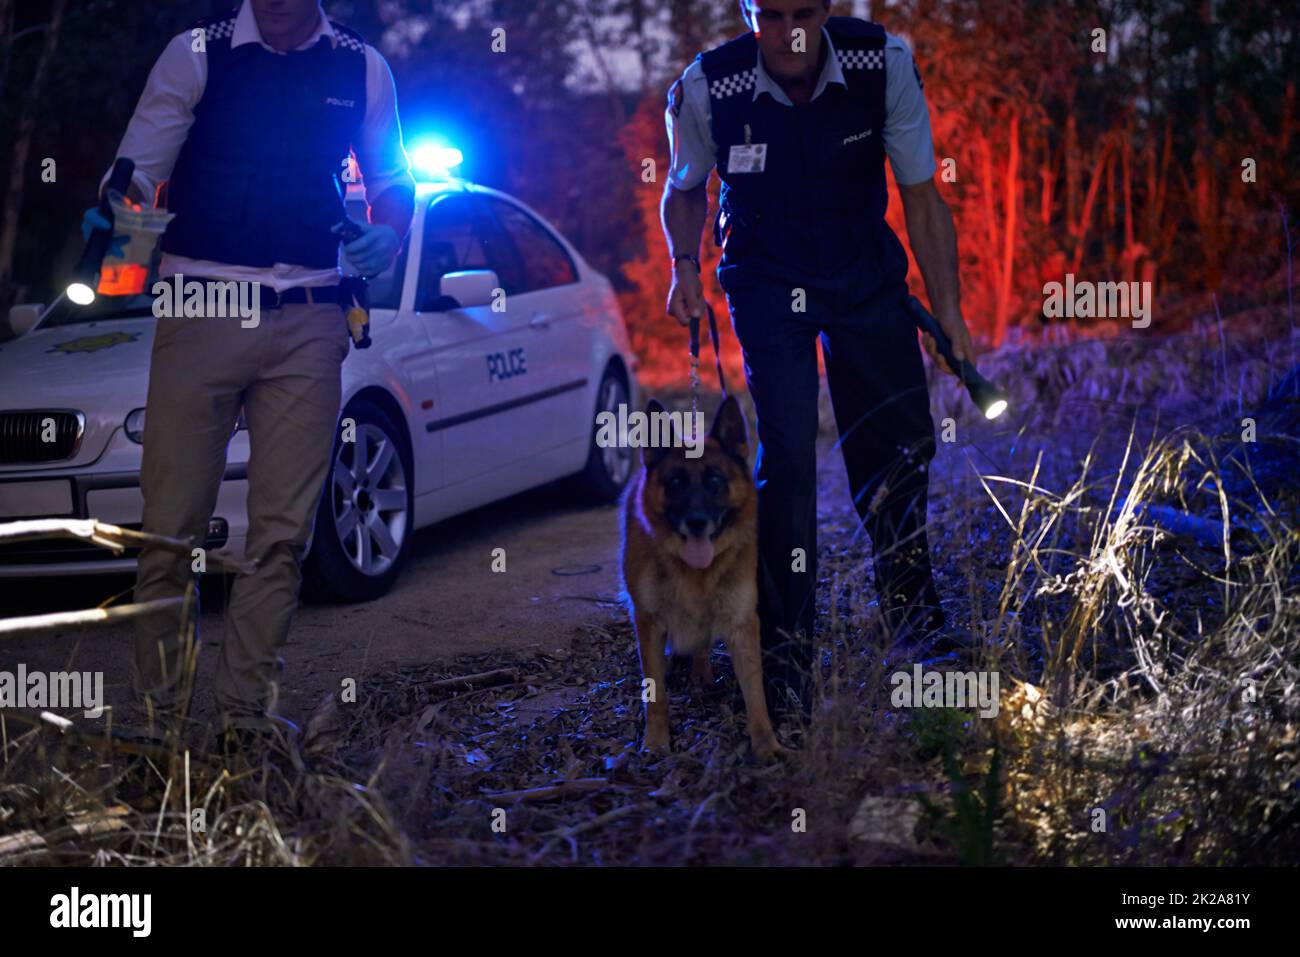 Wir haben es gefunden. Auf zwei Polizisten und ihren Hund geschossen, die nachts einen Verdächtigen durch die Bürste verfolgen. Stockfoto